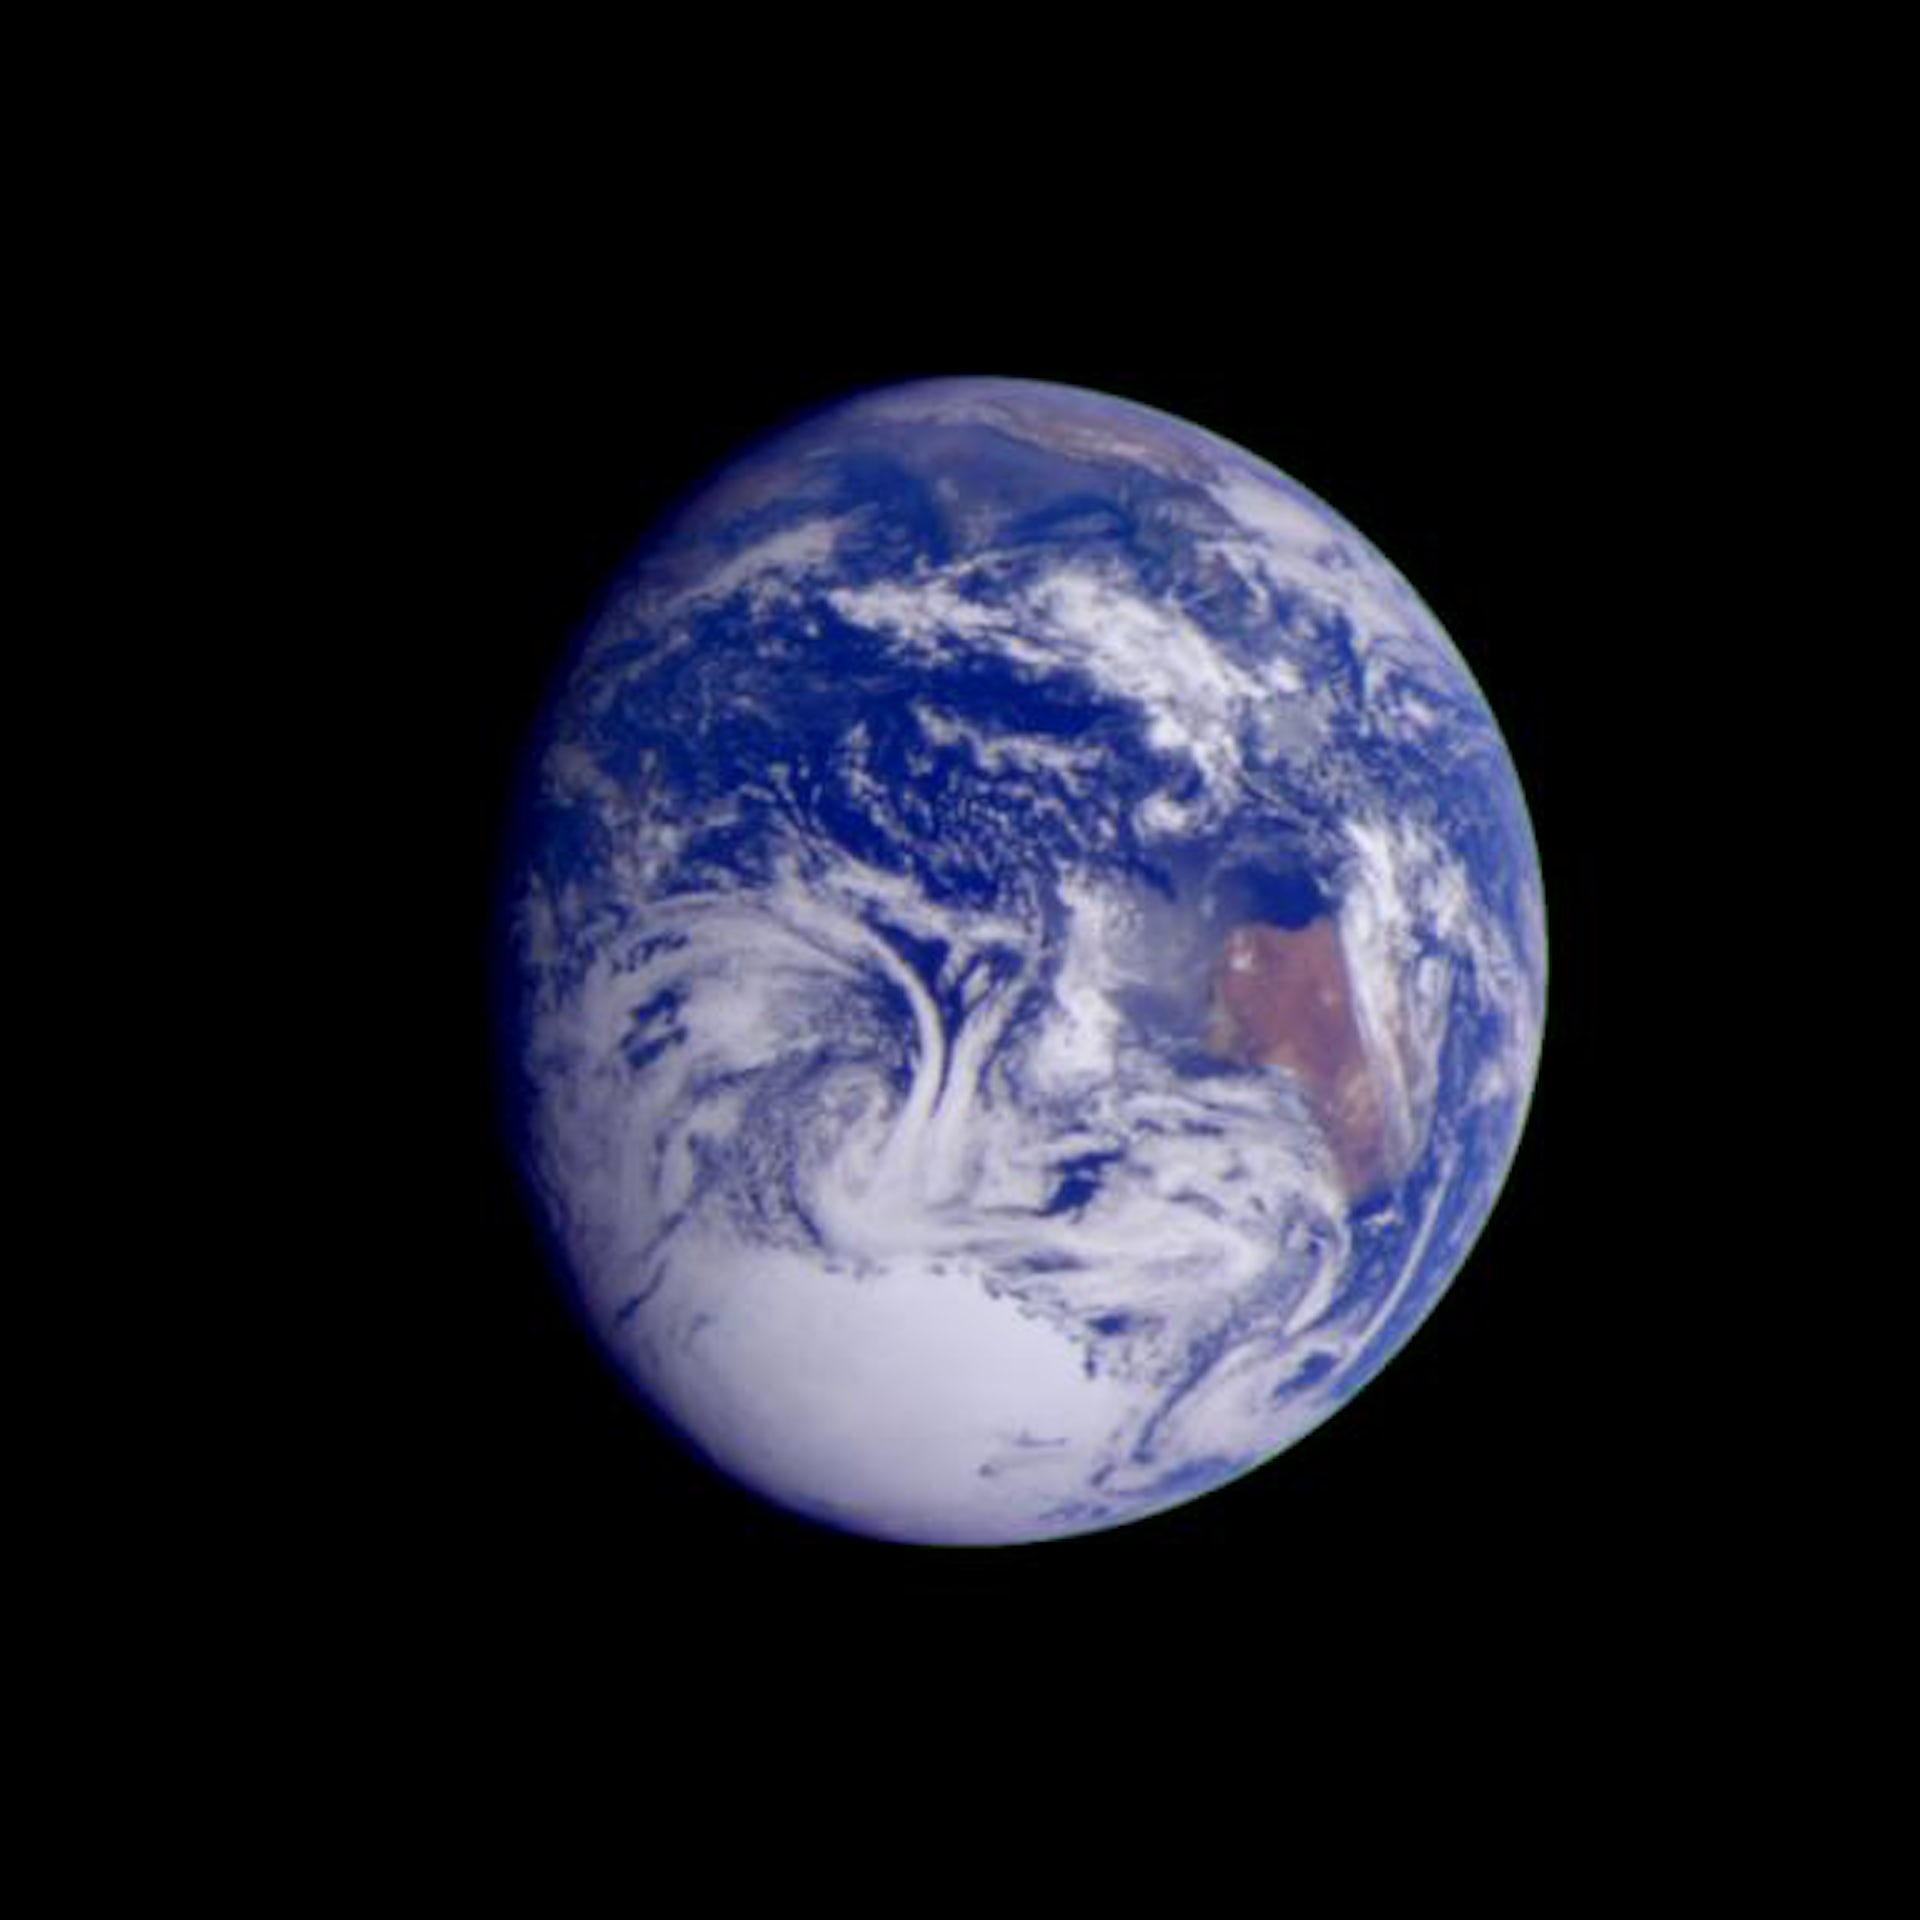 Imagen tomada por la nave espacial Galileo a una distancia de 2.4 millones de kilómetros.